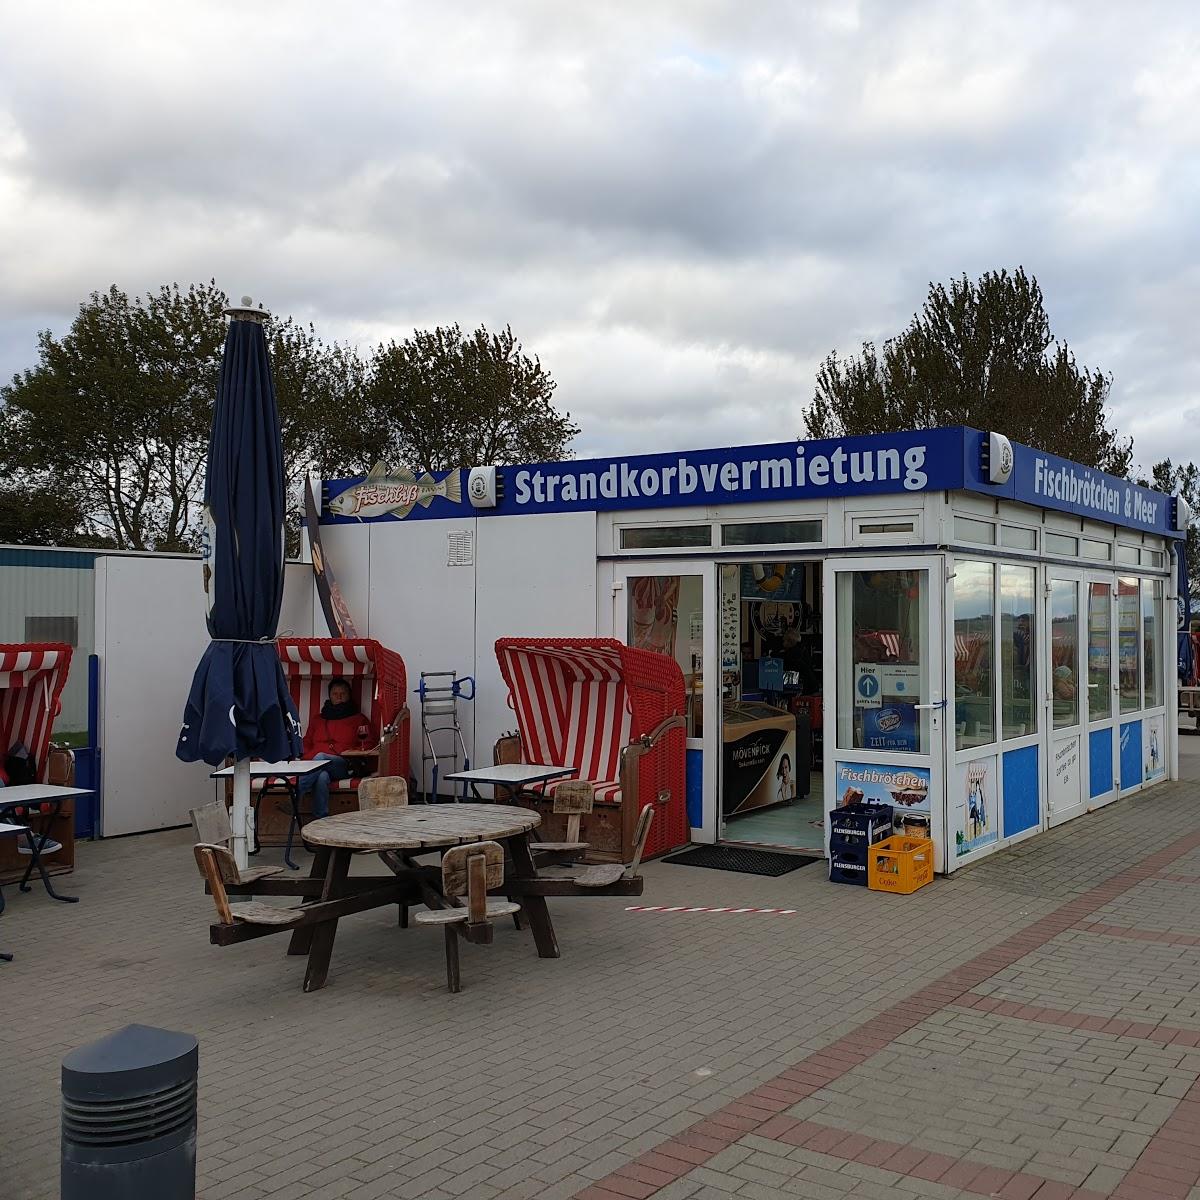 Restaurant "Fischbrötchen & Meer" in Brodersby